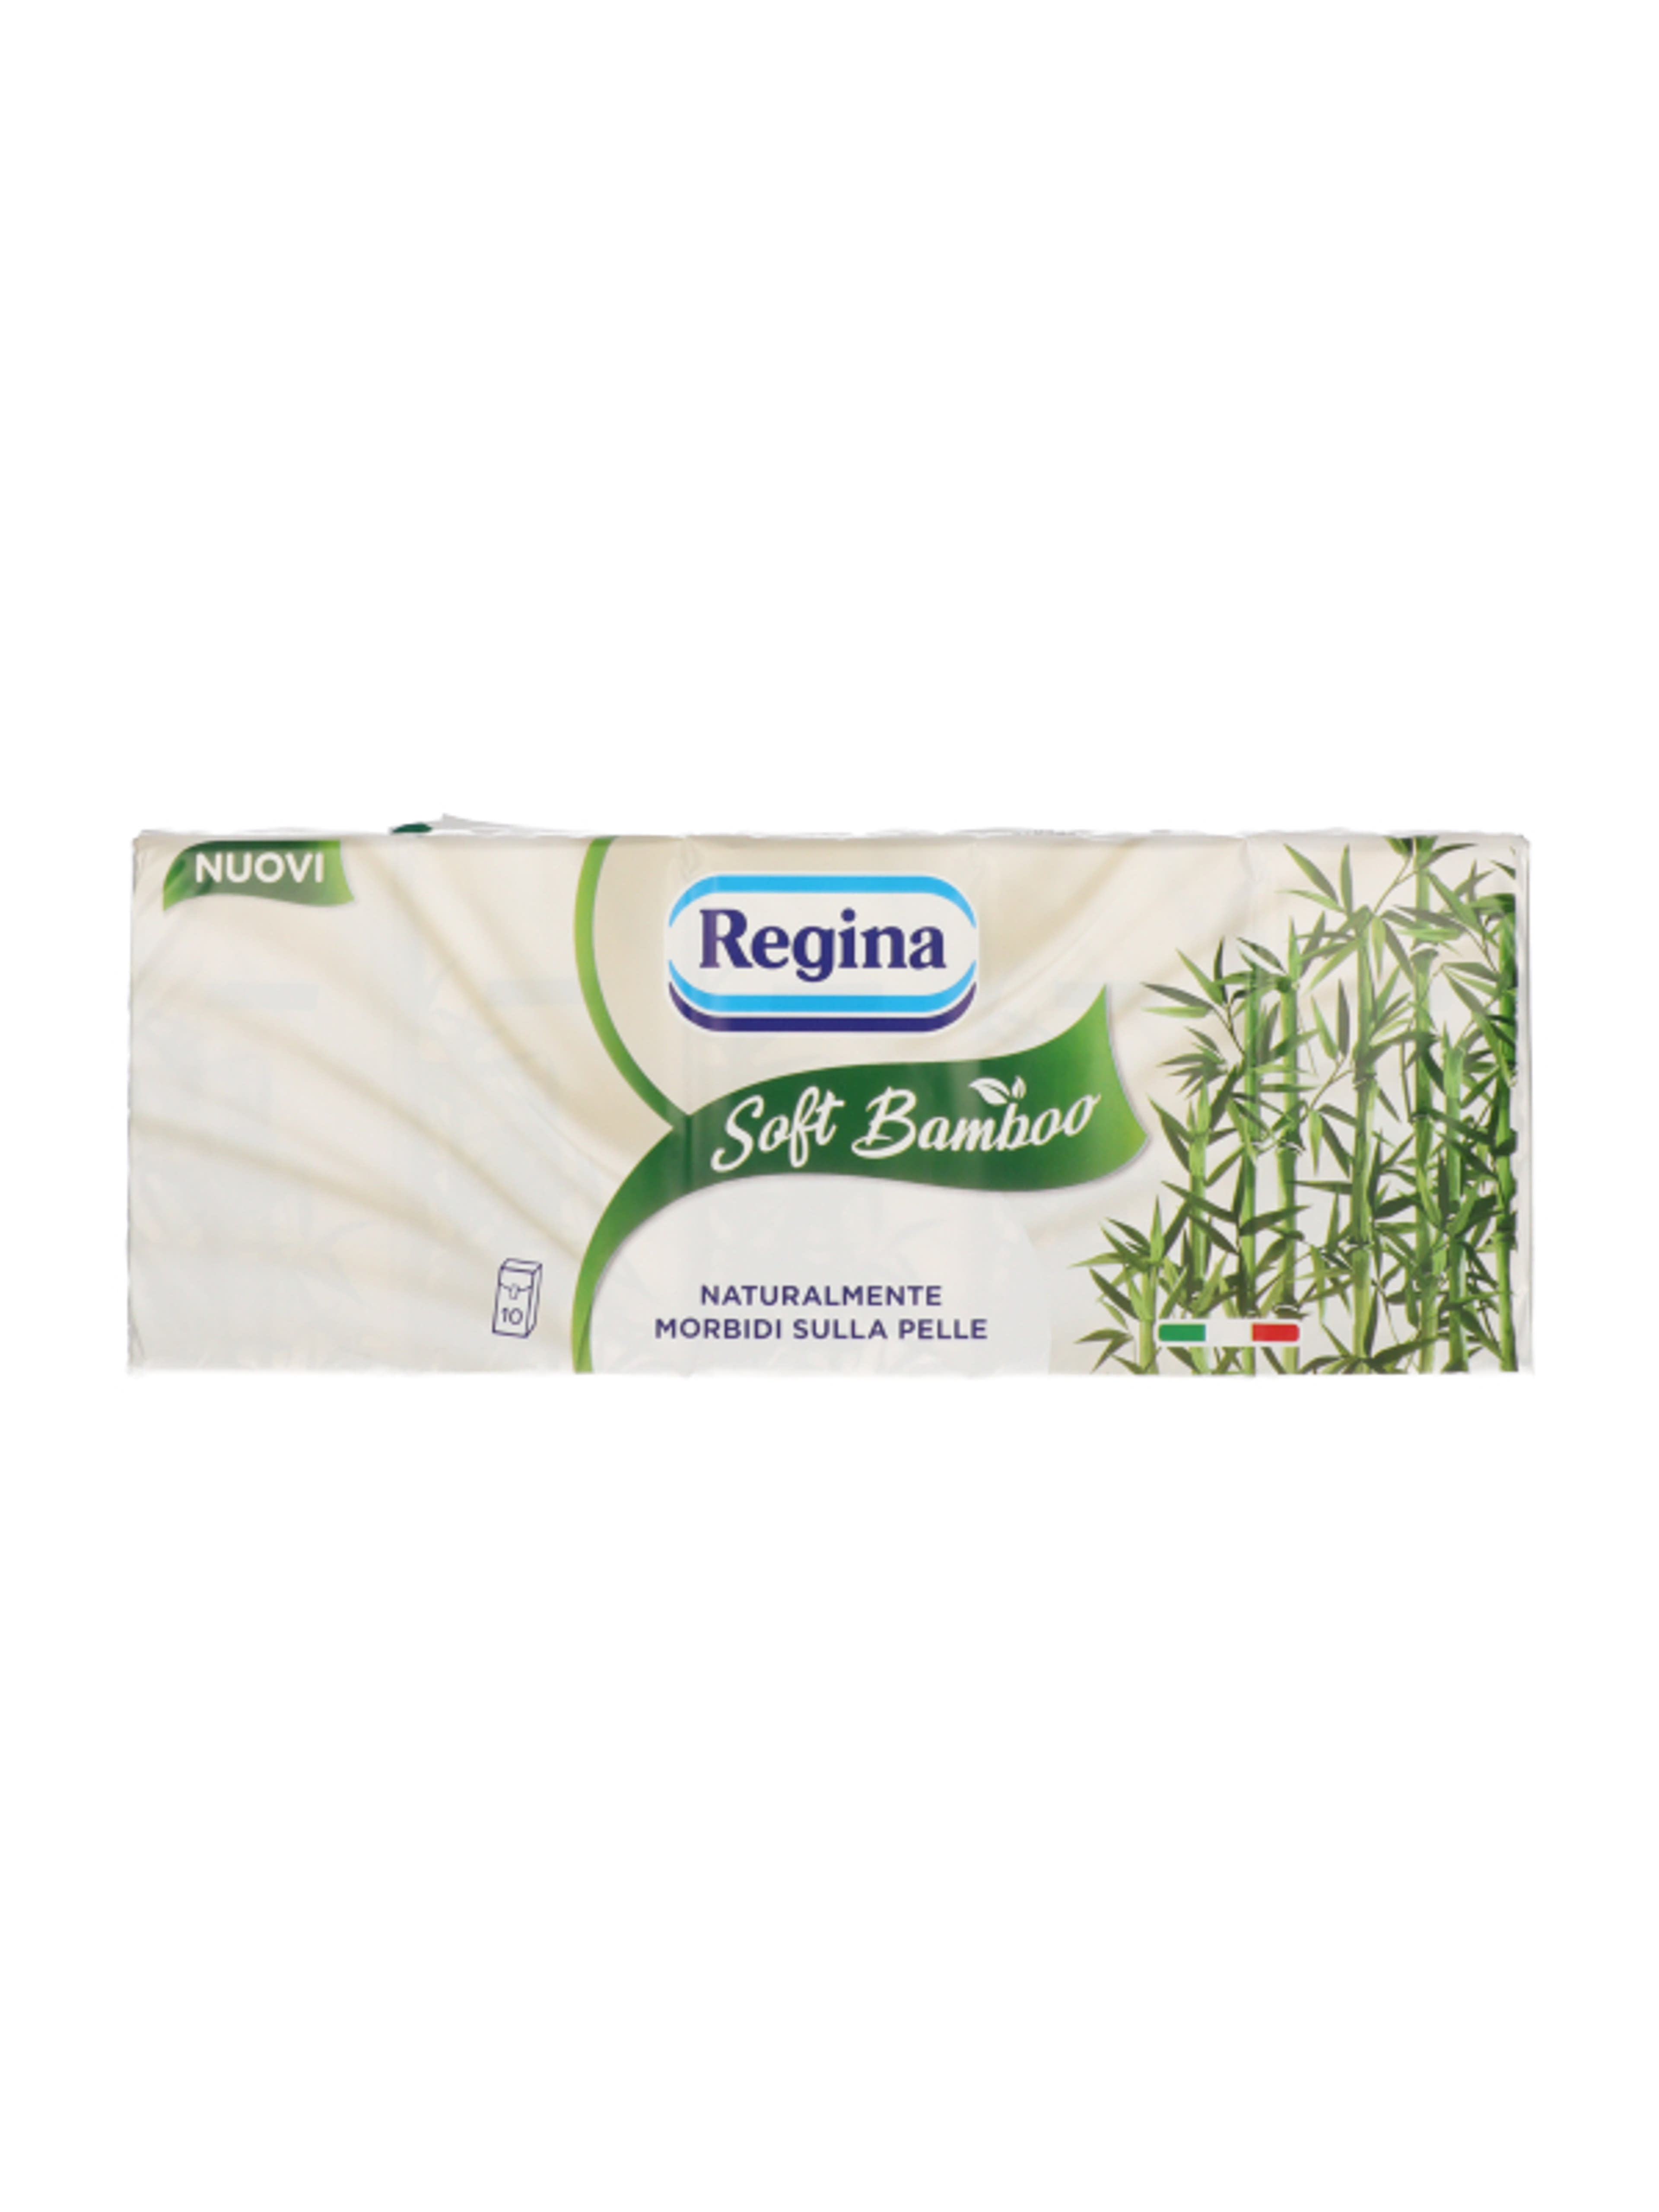 Regina Soft Bamboo papírzsebkendő 4 rétegű, 10x9 db - 90 db